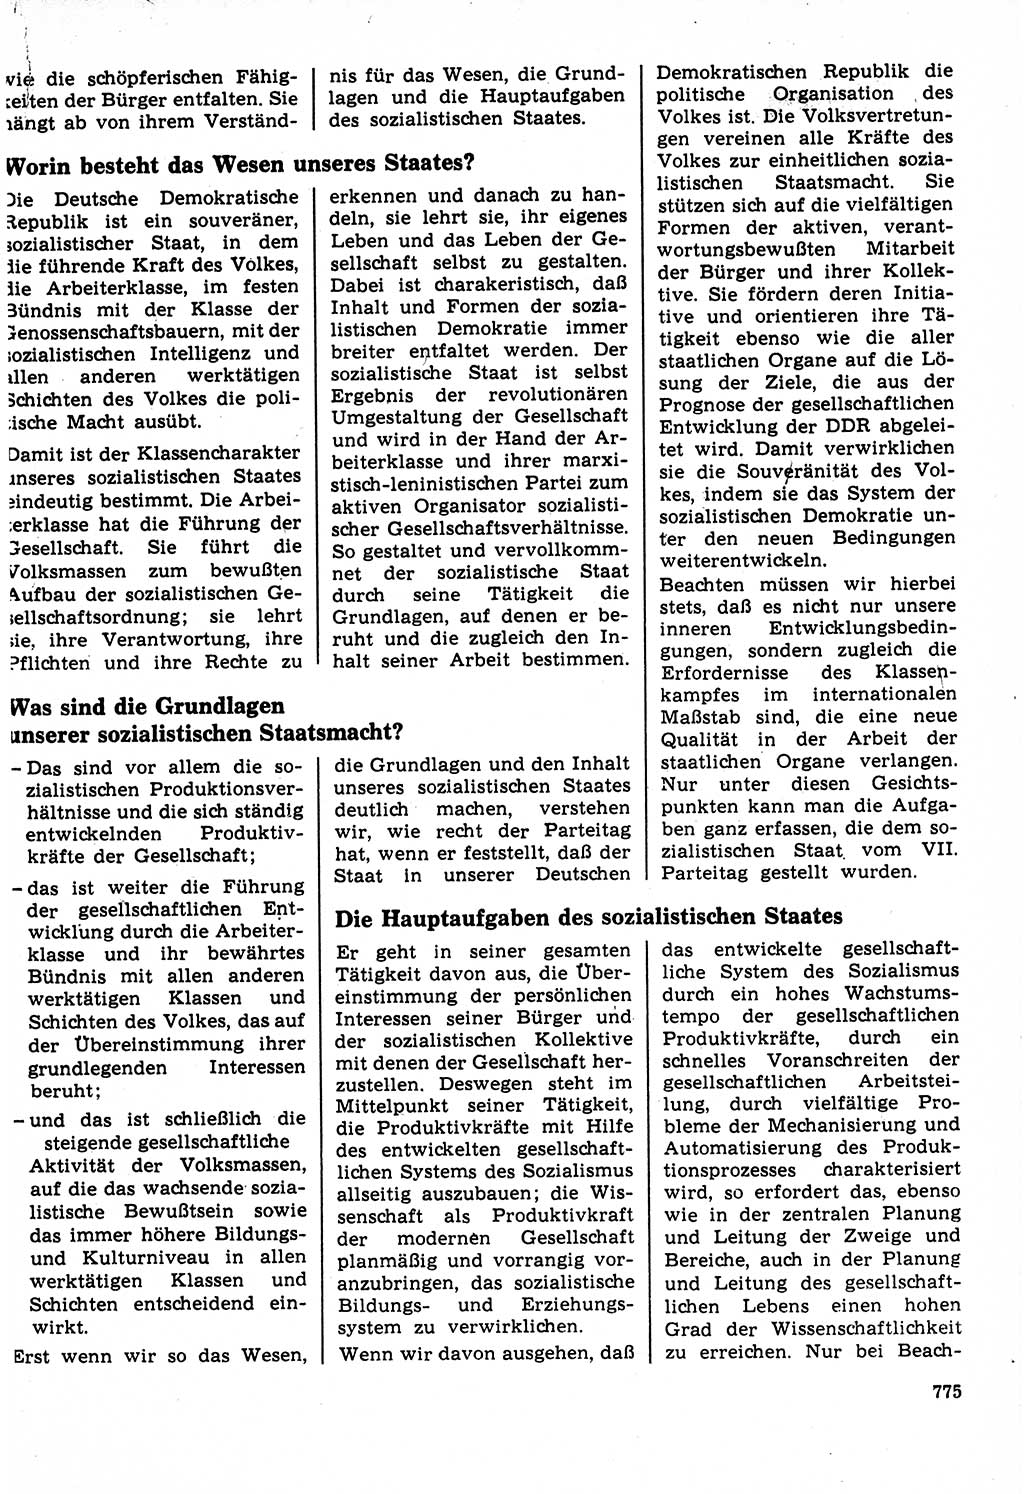 Neuer Weg (NW), Organ des Zentralkomitees (ZK) der SED (Sozialistische Einheitspartei Deutschlands) für Fragen des Parteilebens, 22. Jahrgang [Deutsche Demokratische Republik (DDR)] 1967, Seite 775 (NW ZK SED DDR 1967, S. 775)